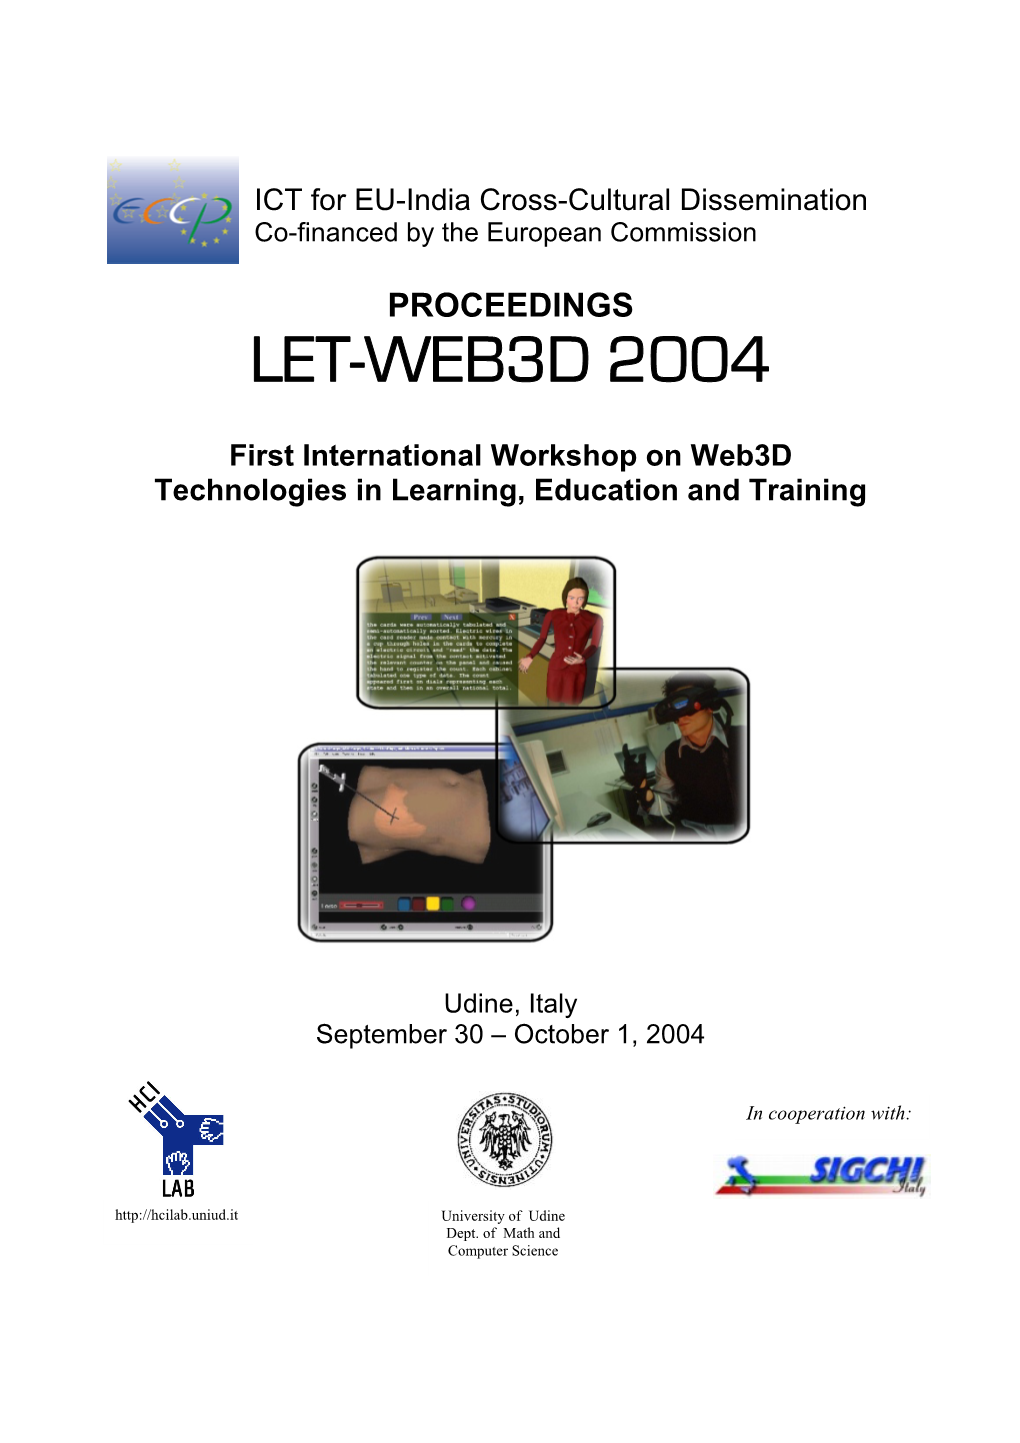 Let-Web3d 2004